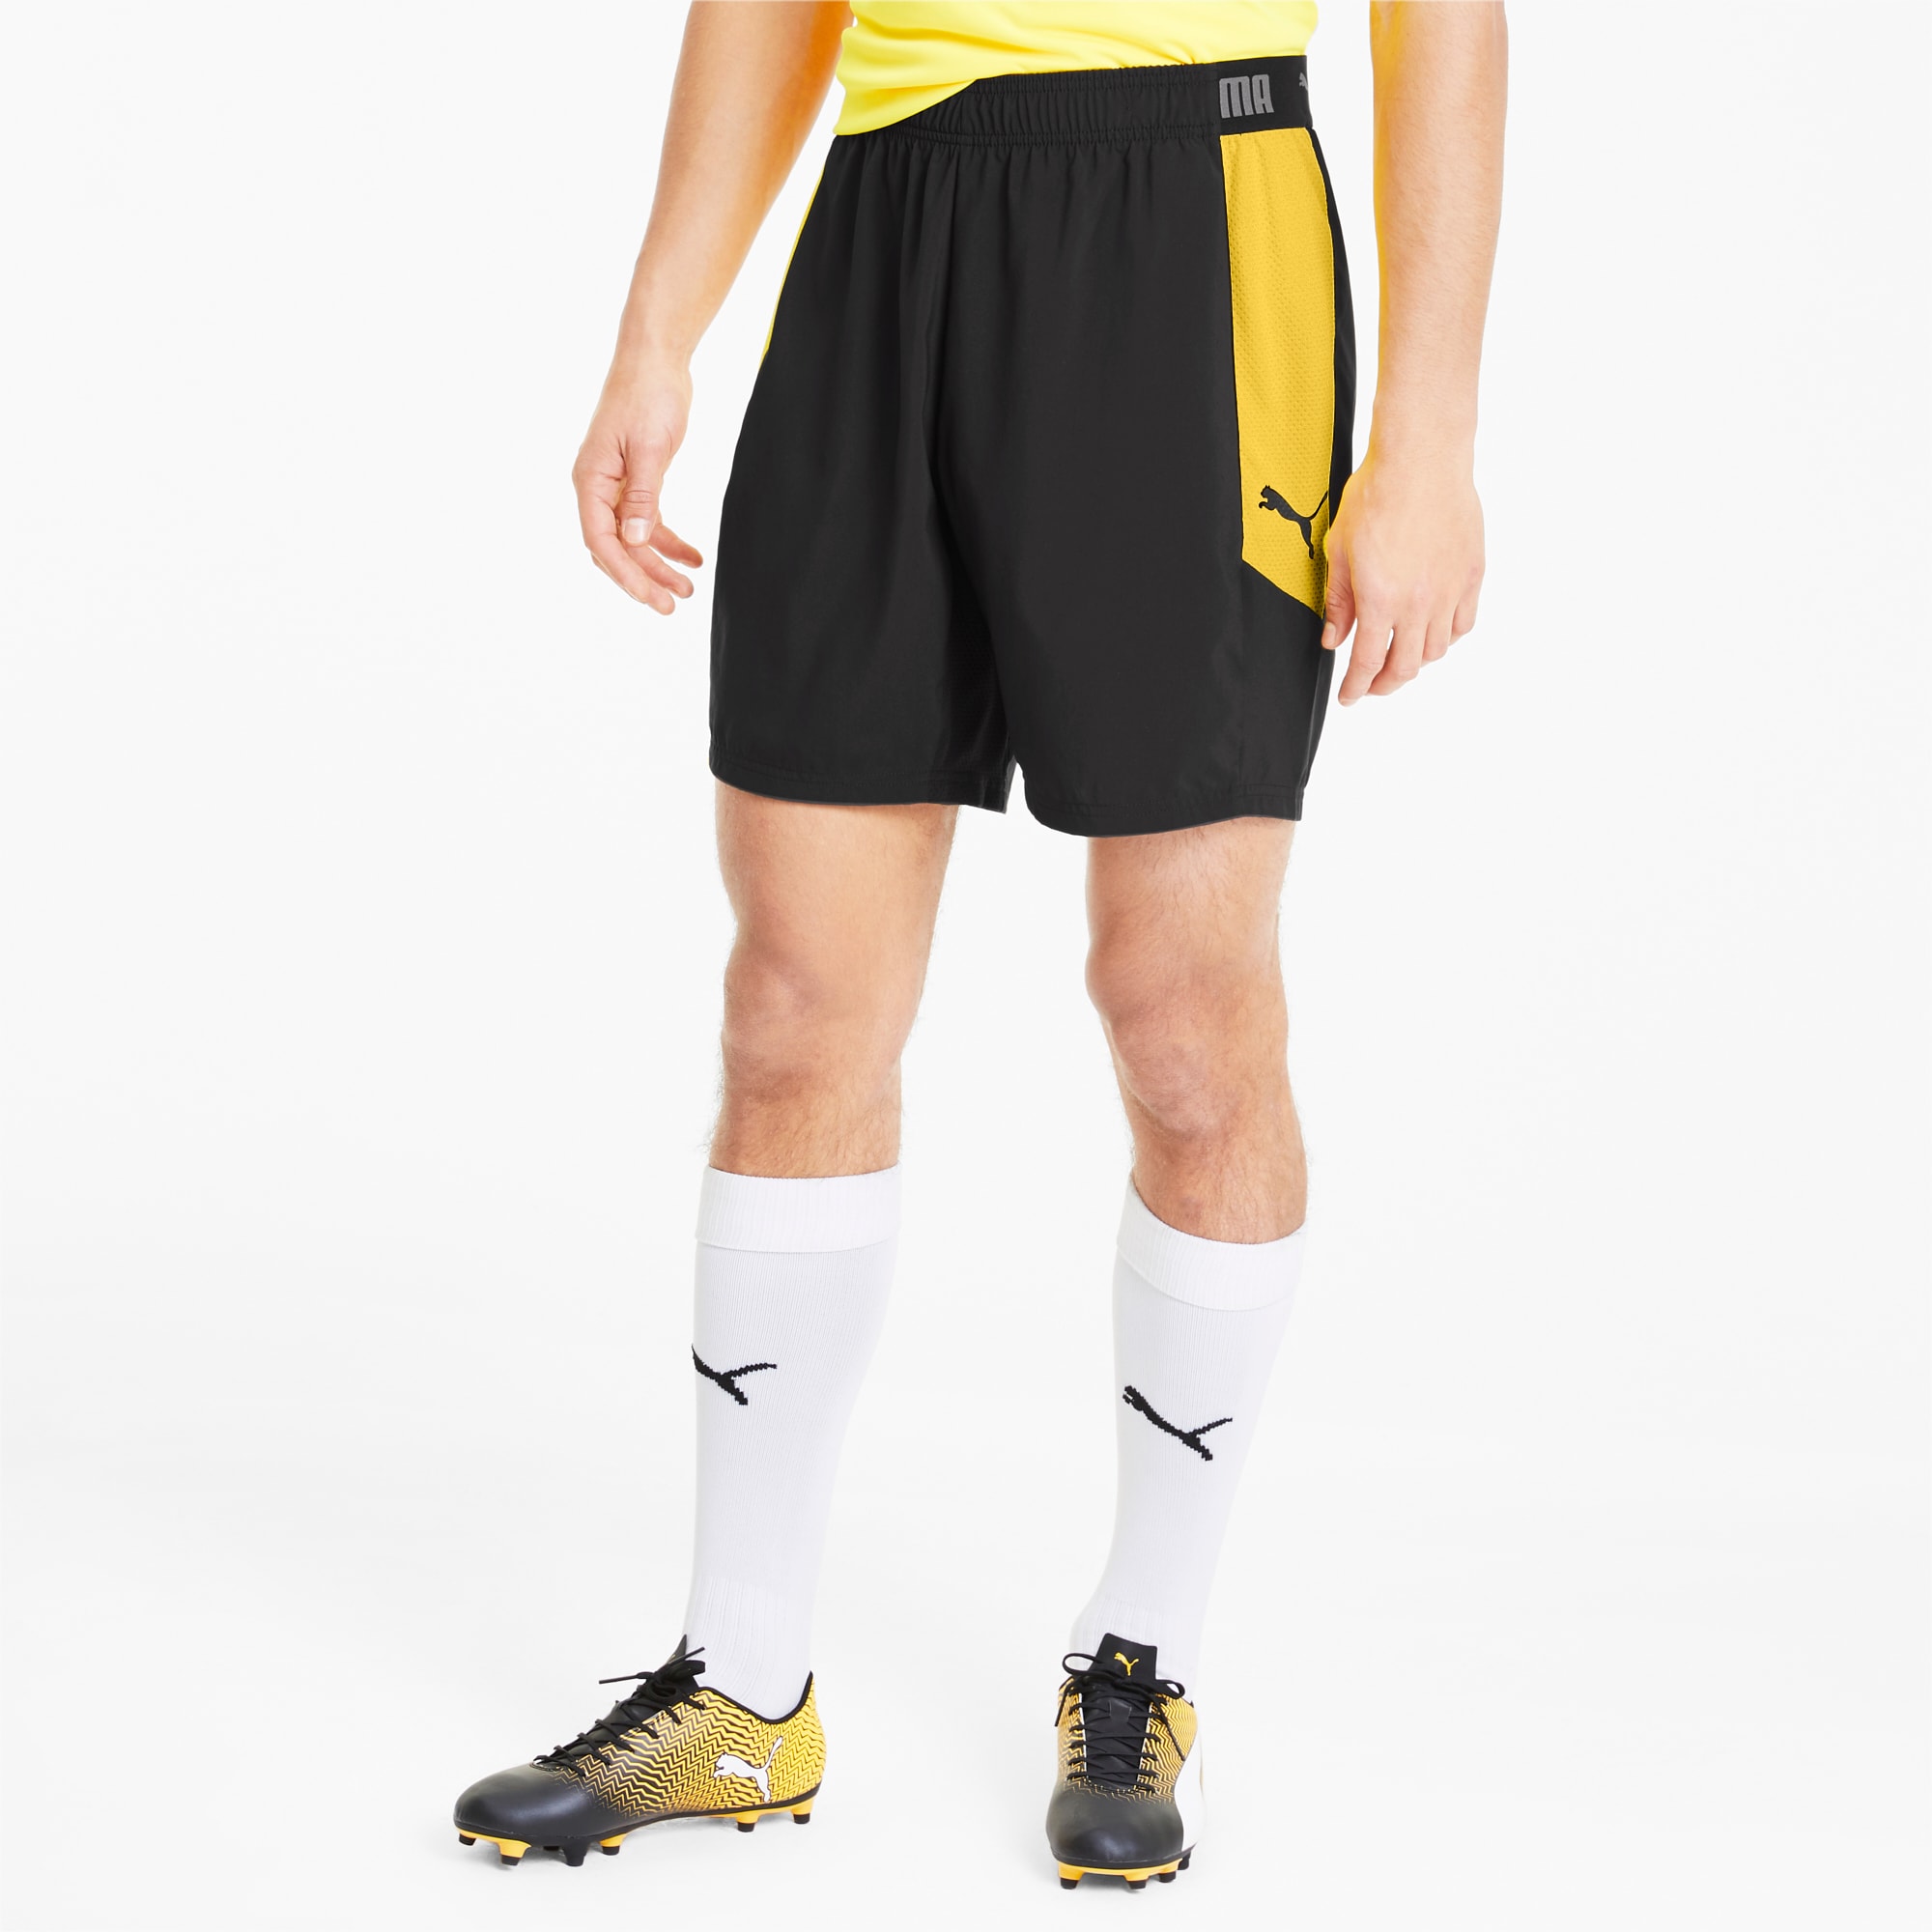 server uitlokken revolutie ftblNXT Woven Men's Football Shorts | PUMA Shopback x PUMA | PUMA